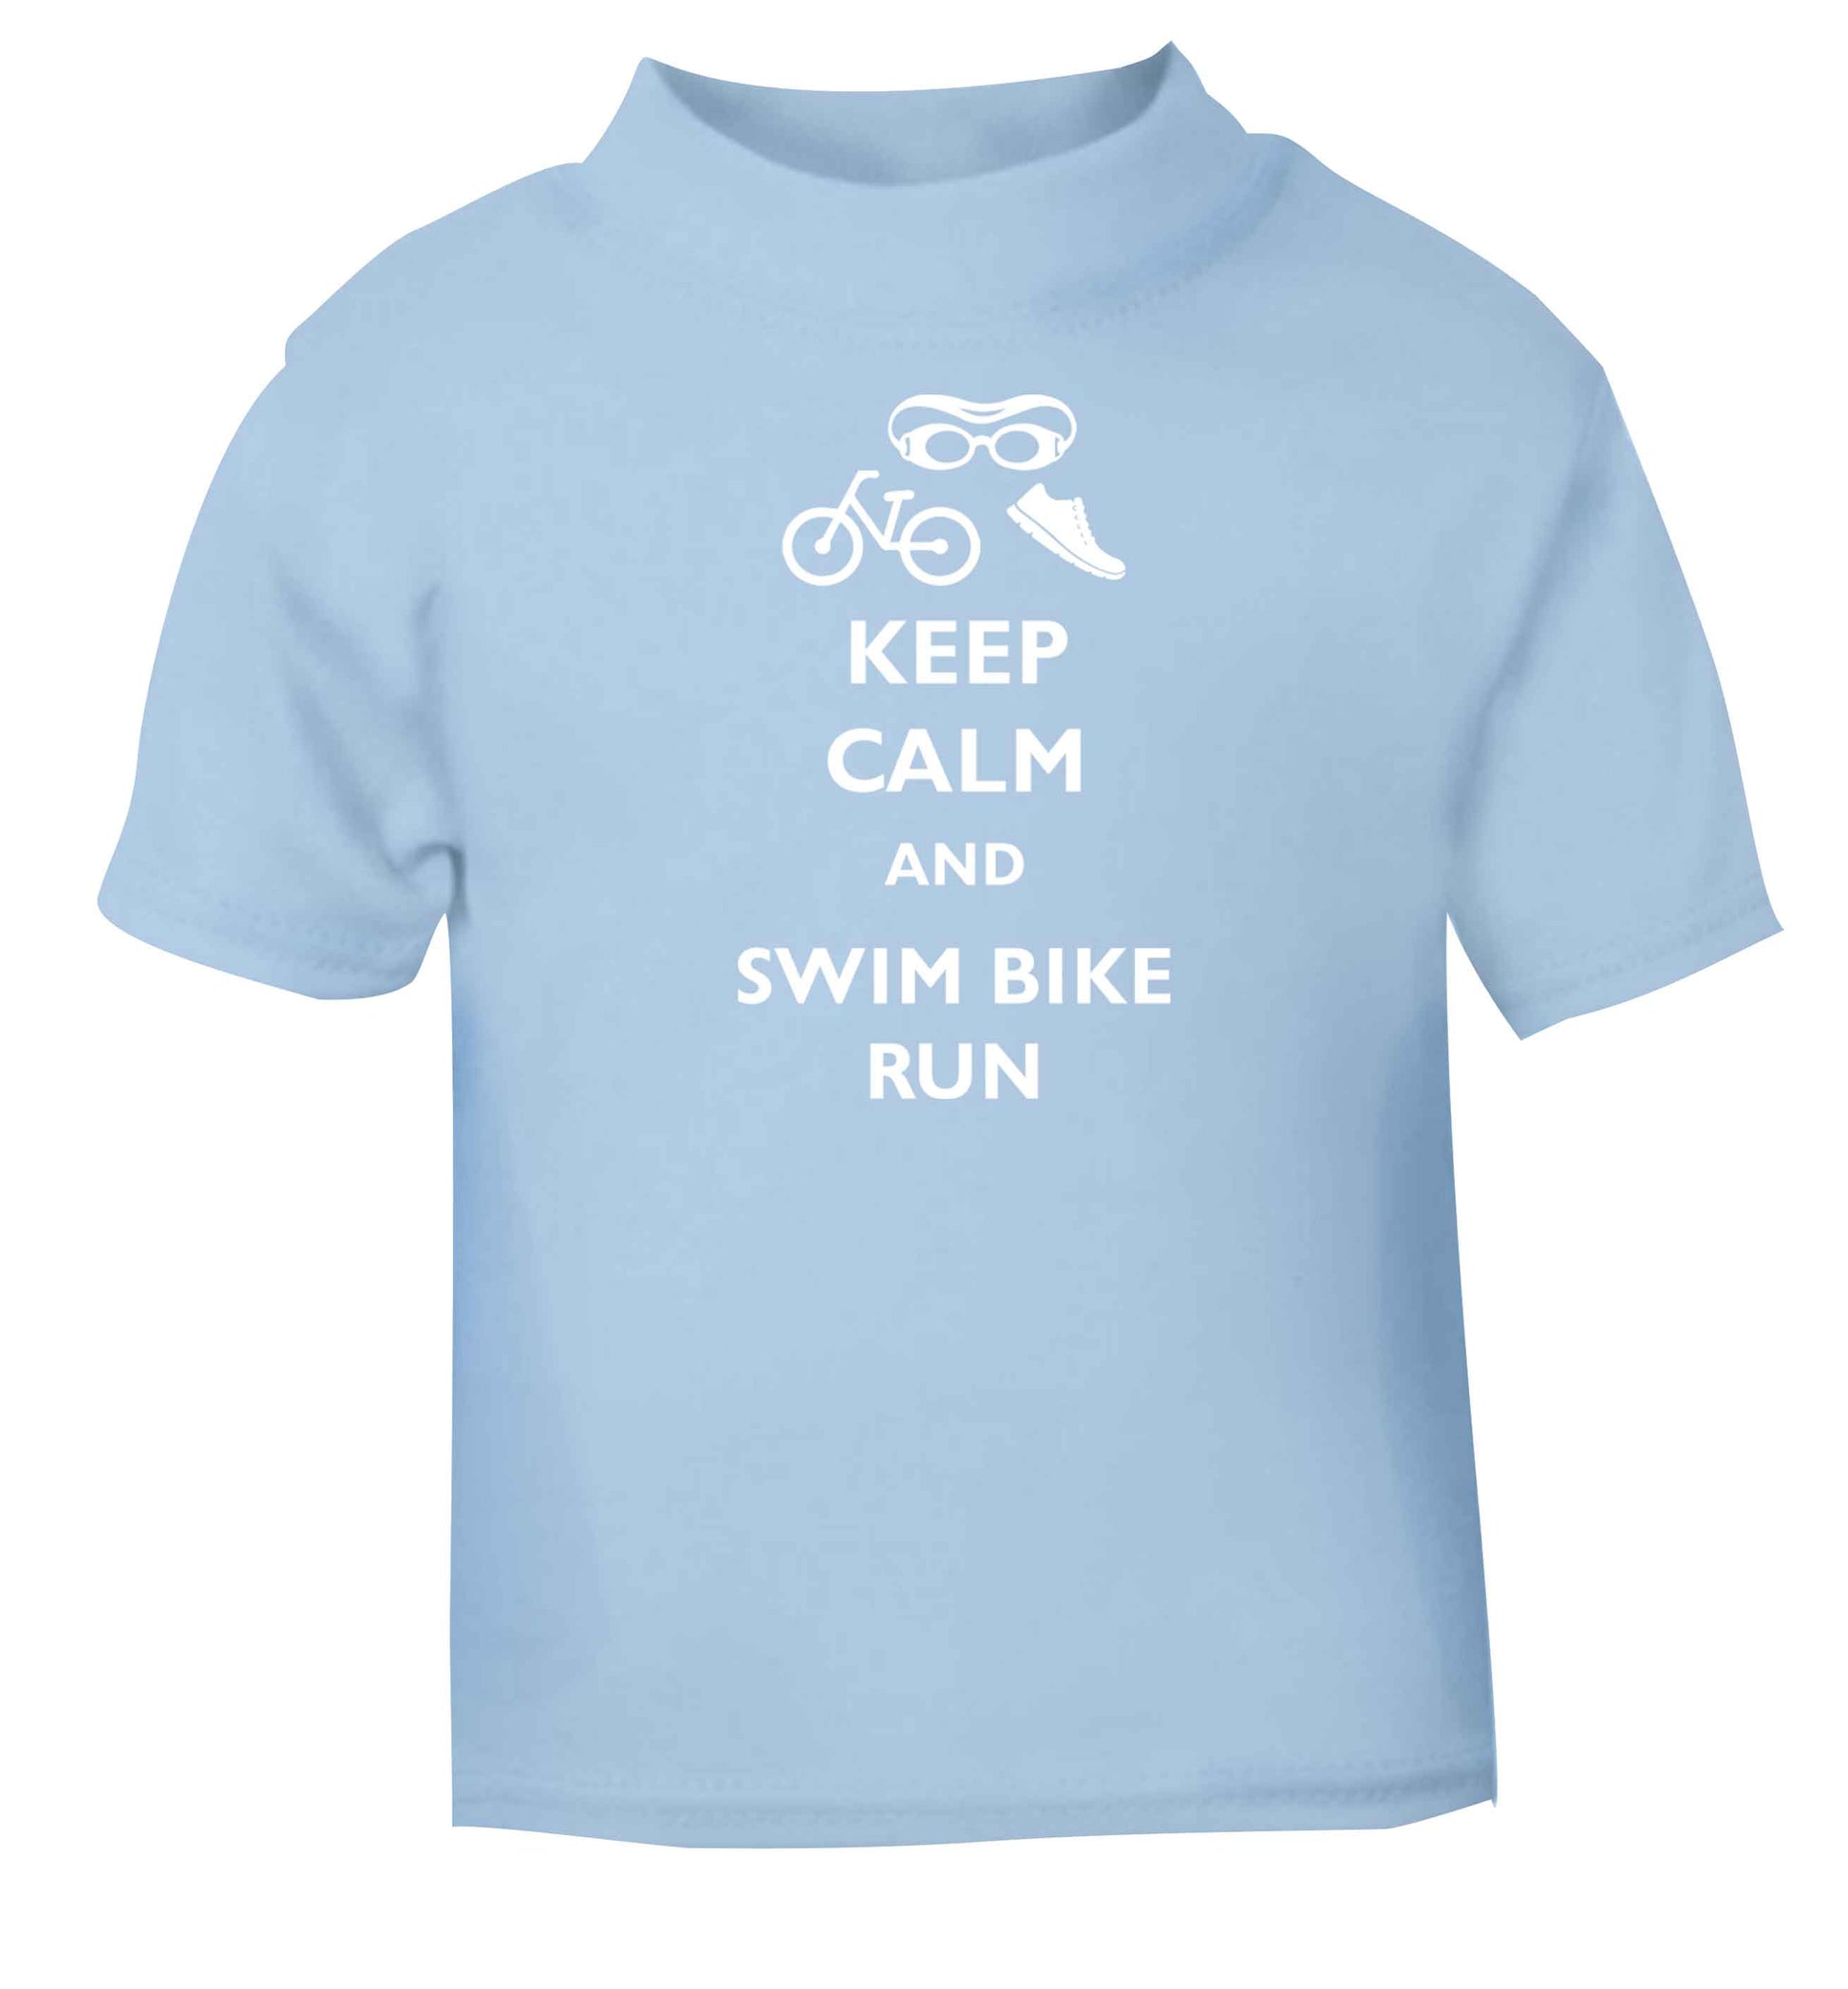 Keep calm and swim bike run light blue baby toddler Tshirt 2 Years